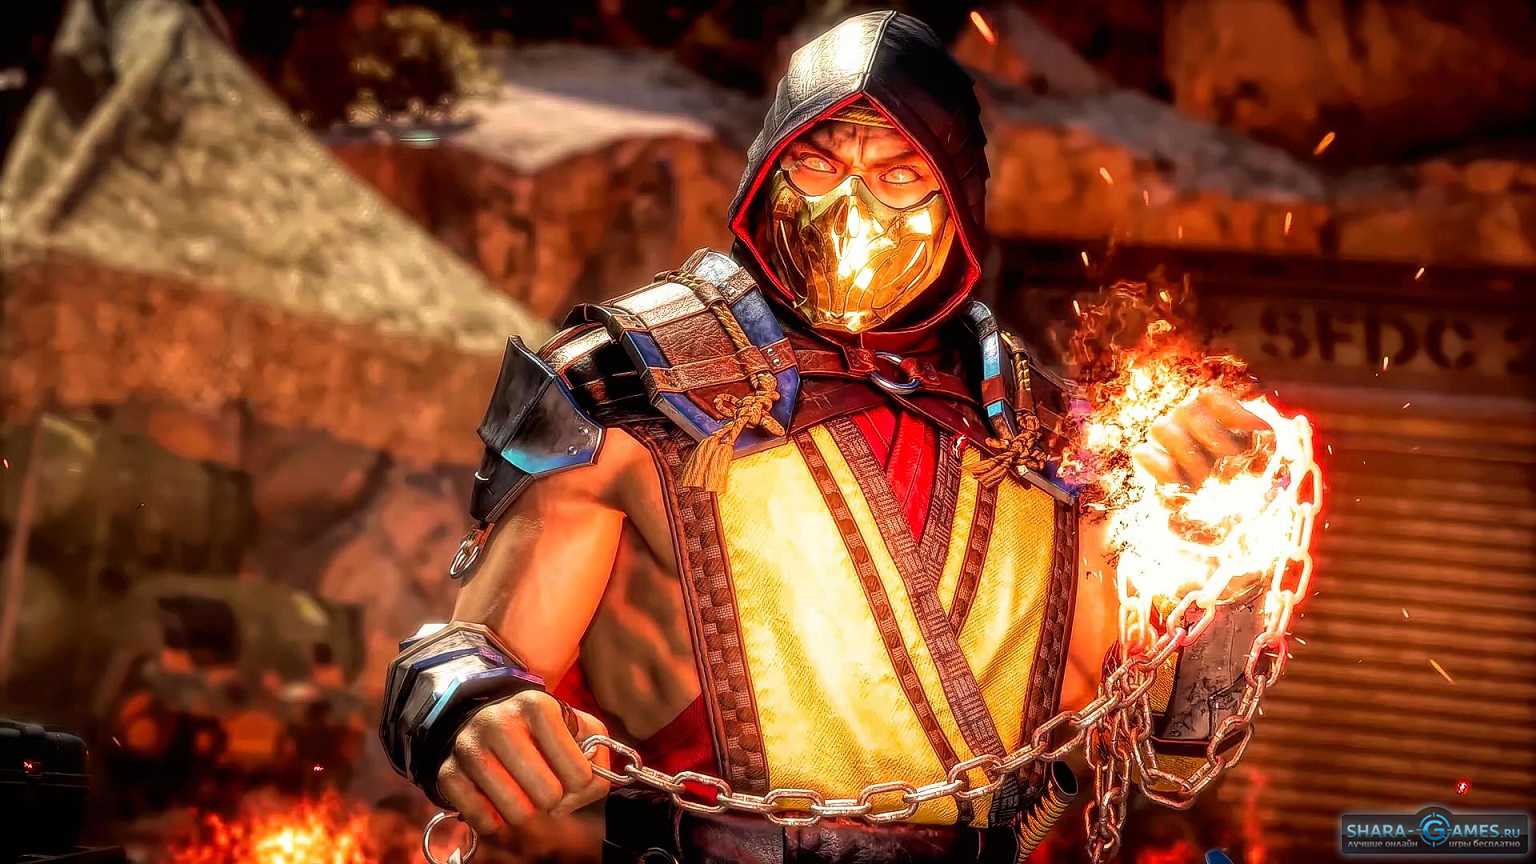 Mortal kombat x updates steam фото 78